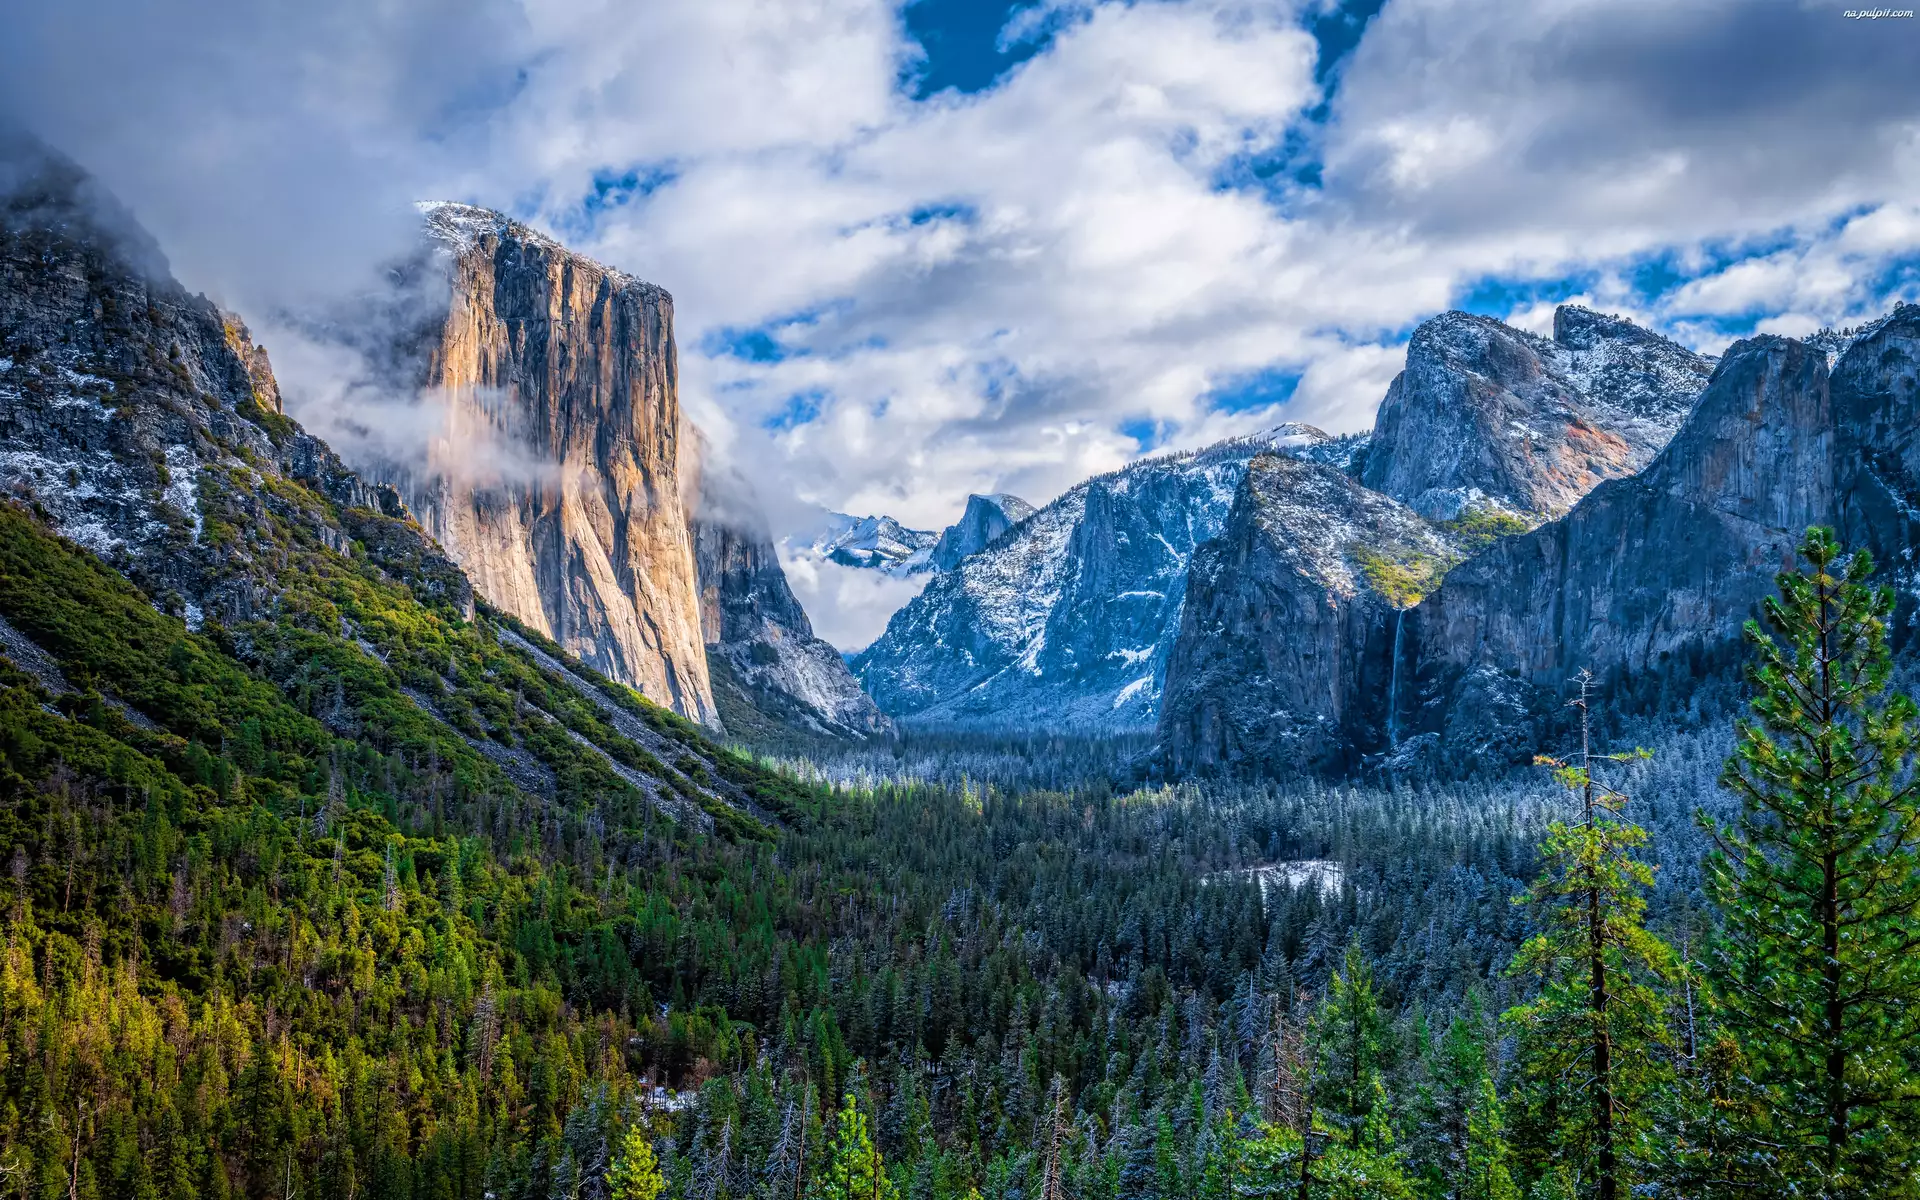 Kalifornia, Dolina Yosemite Valley, Park Narodowy Yosemite, Stany Zjednoczone, Chmury, Lasy, Góry Sierra Nevada